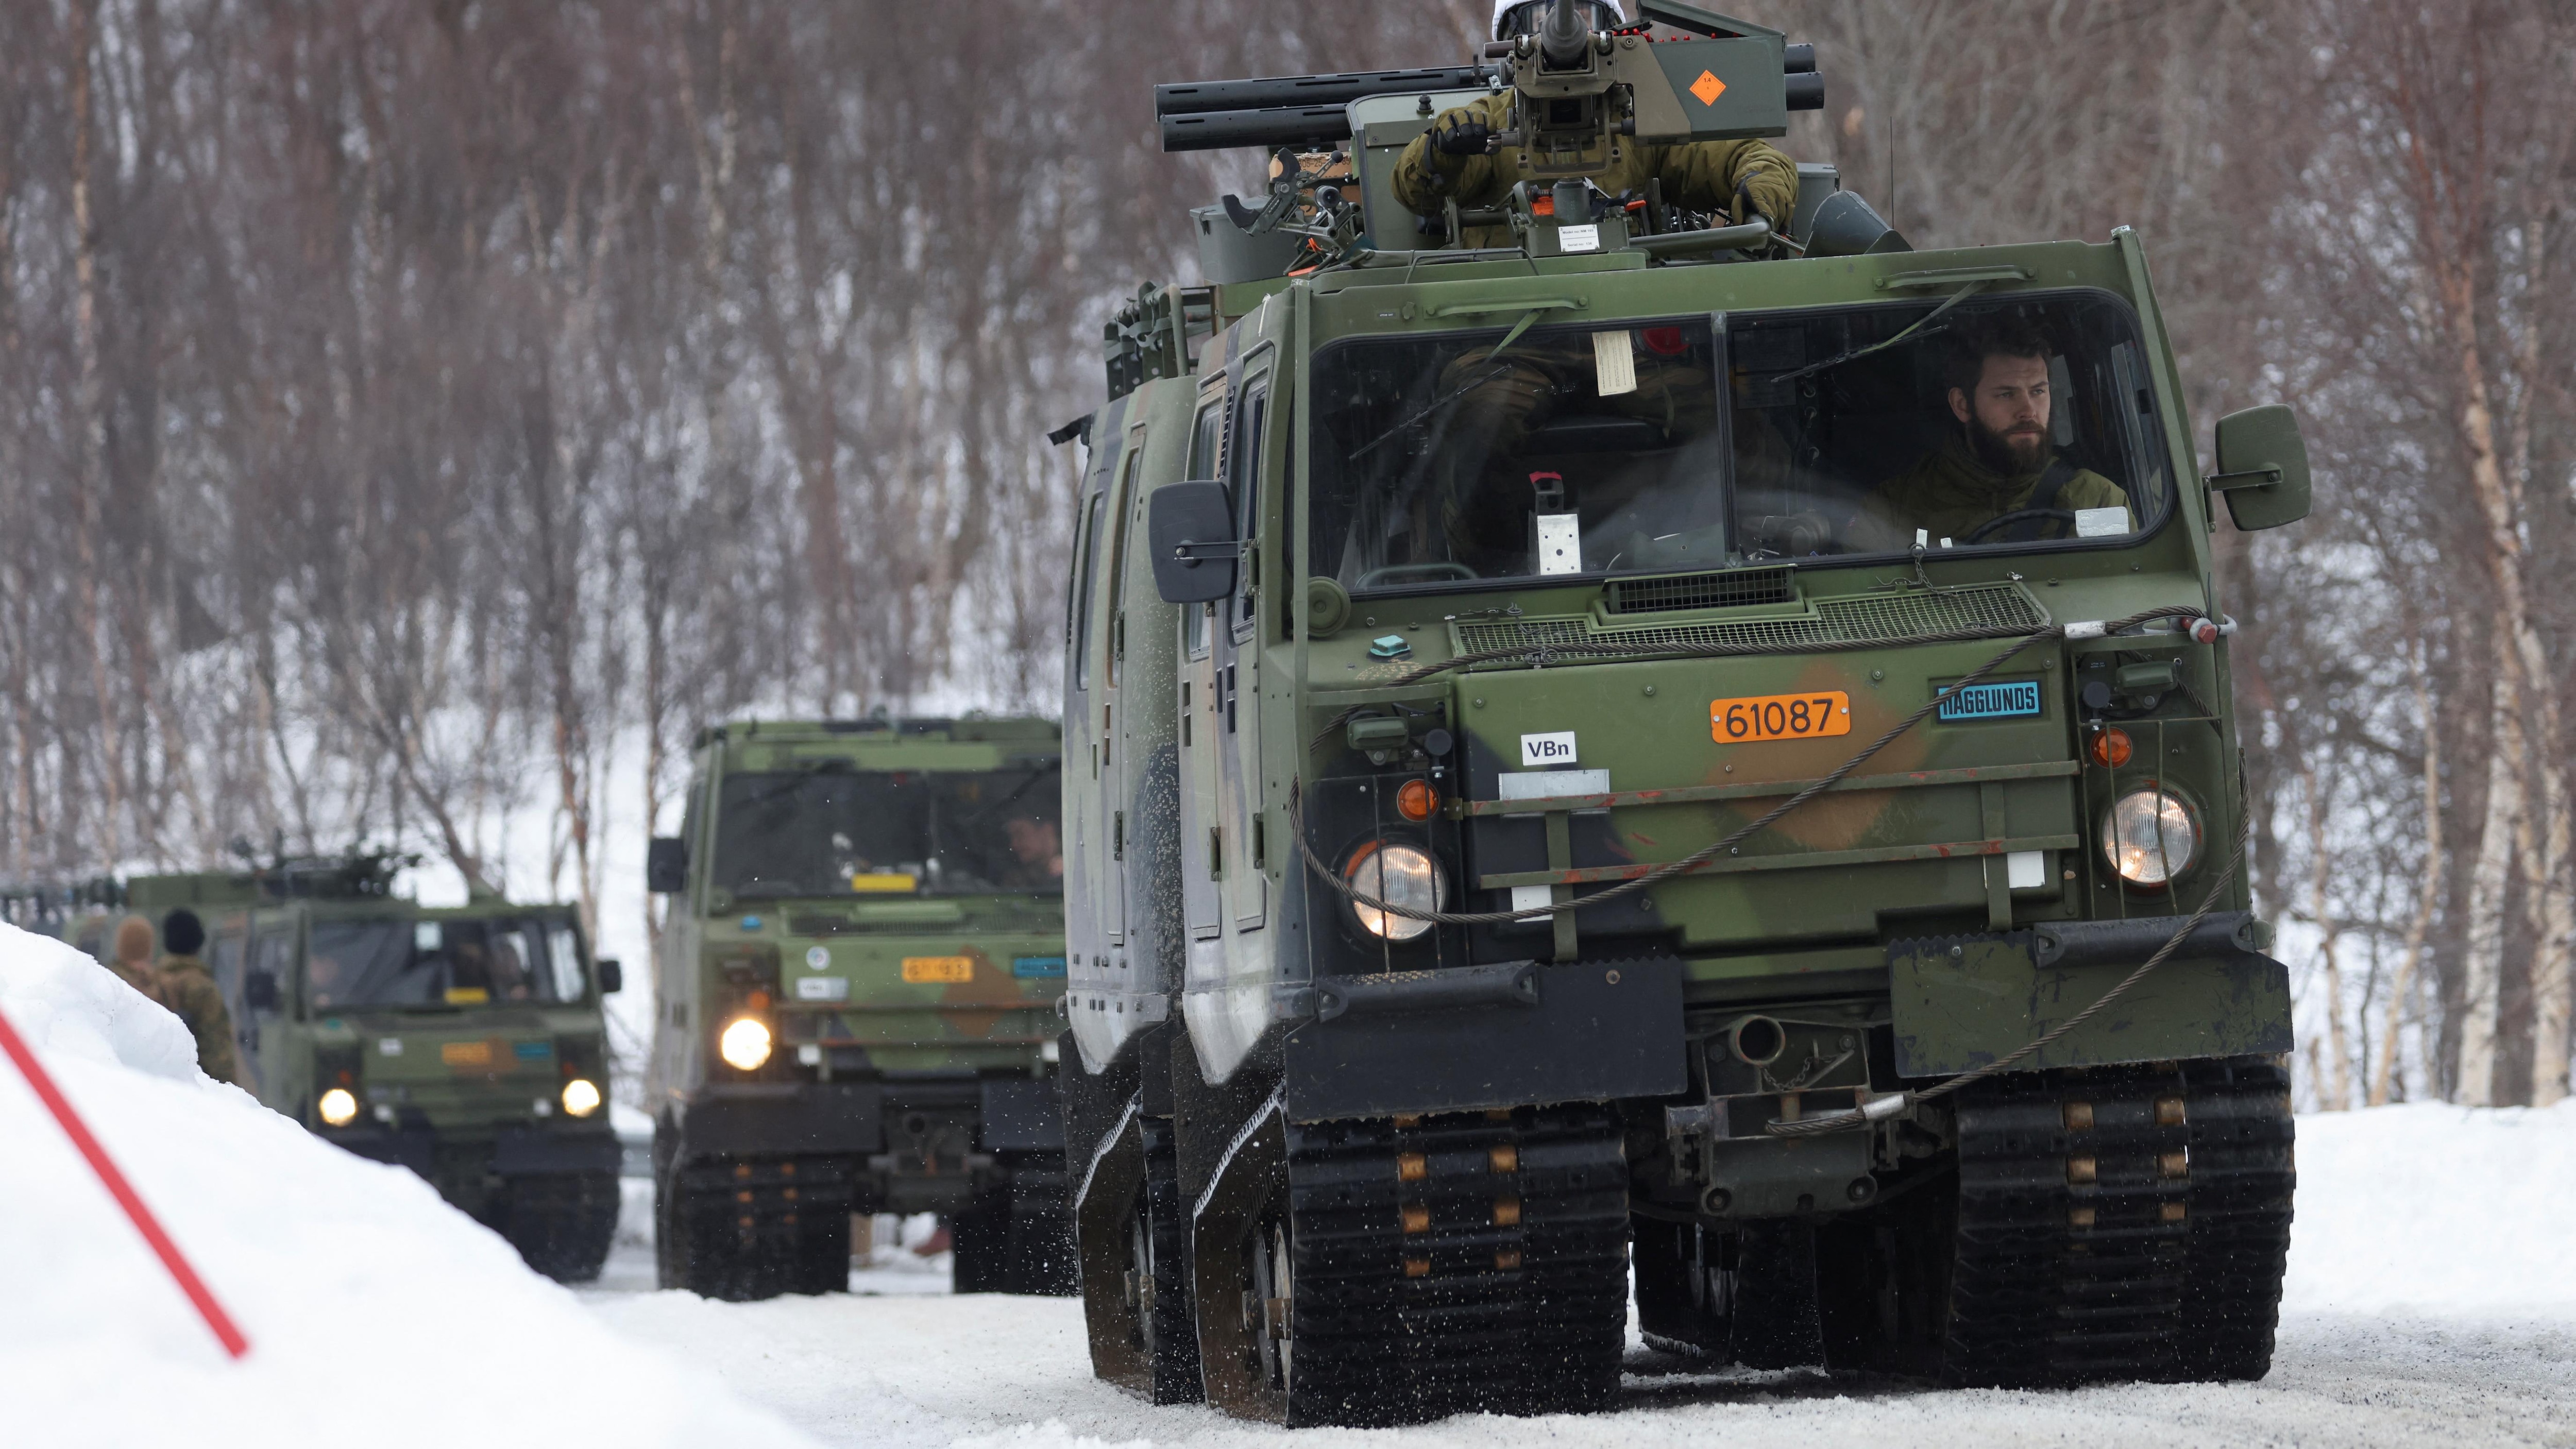 La Suède et la Finlande proches de se joindre à l’OTAN
La Suède et la Finlande proches de se joindre à l’OTAN